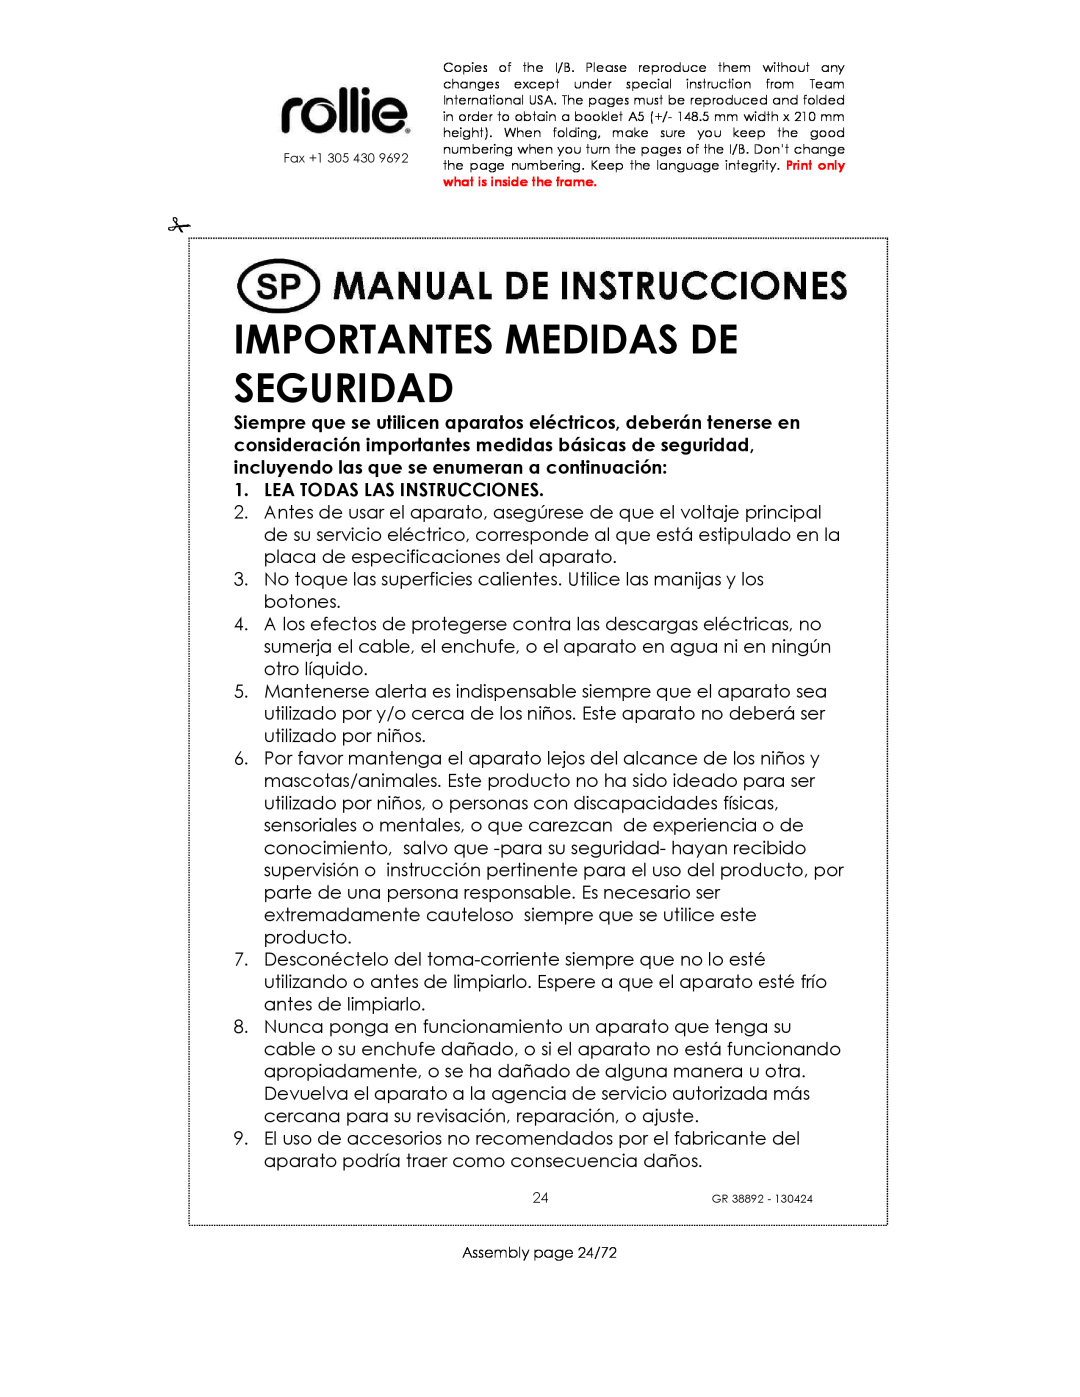 Kalorik GR38892 manual Importantes Medidas De Seguridad, Lea Todas Las Instrucciones 